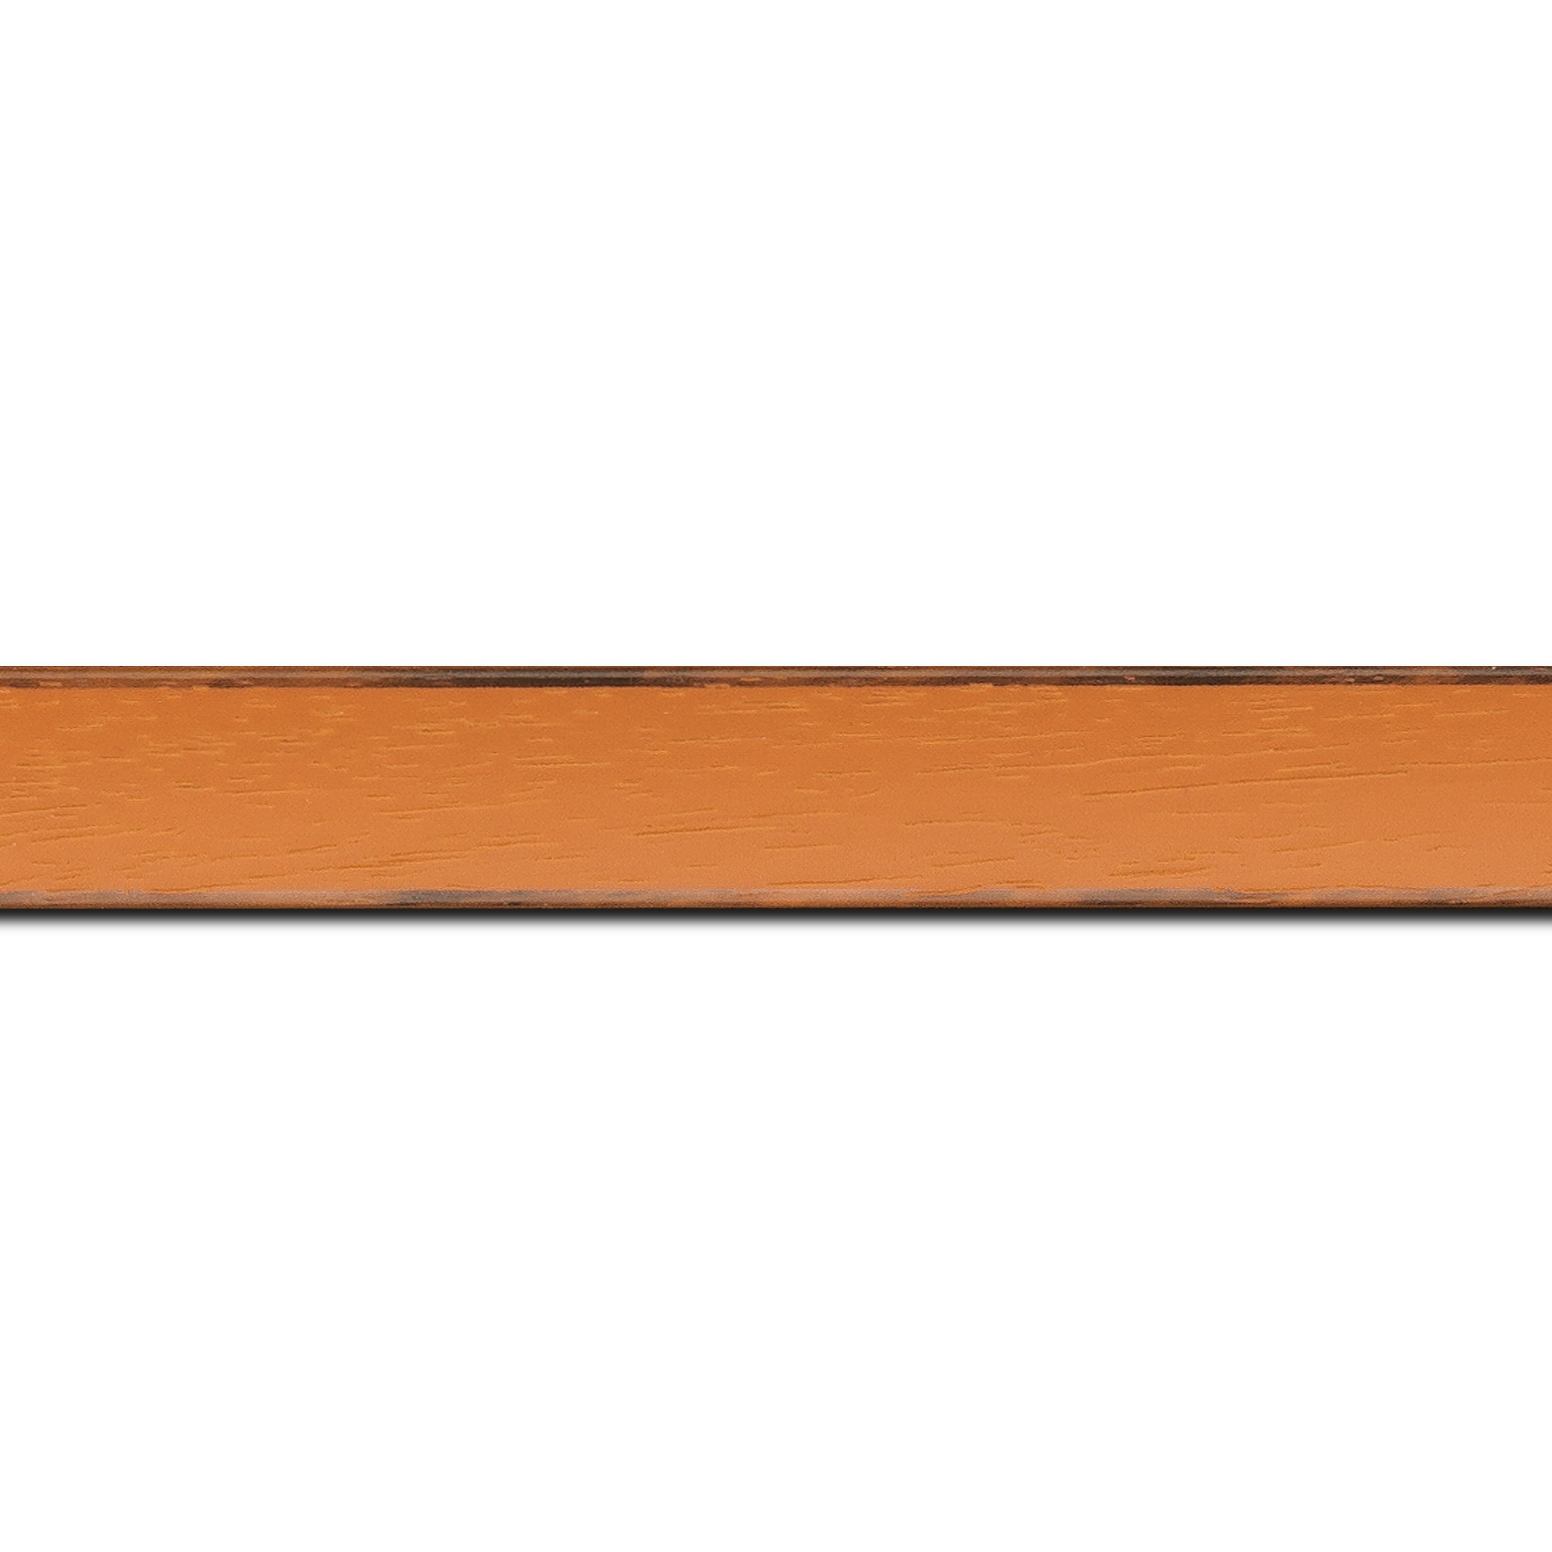 Baguette longueur 1.40m bois profil concave largeur 2.4cm couleur orange tonique  satiné  arêtes essuyés noircies de chaque coté